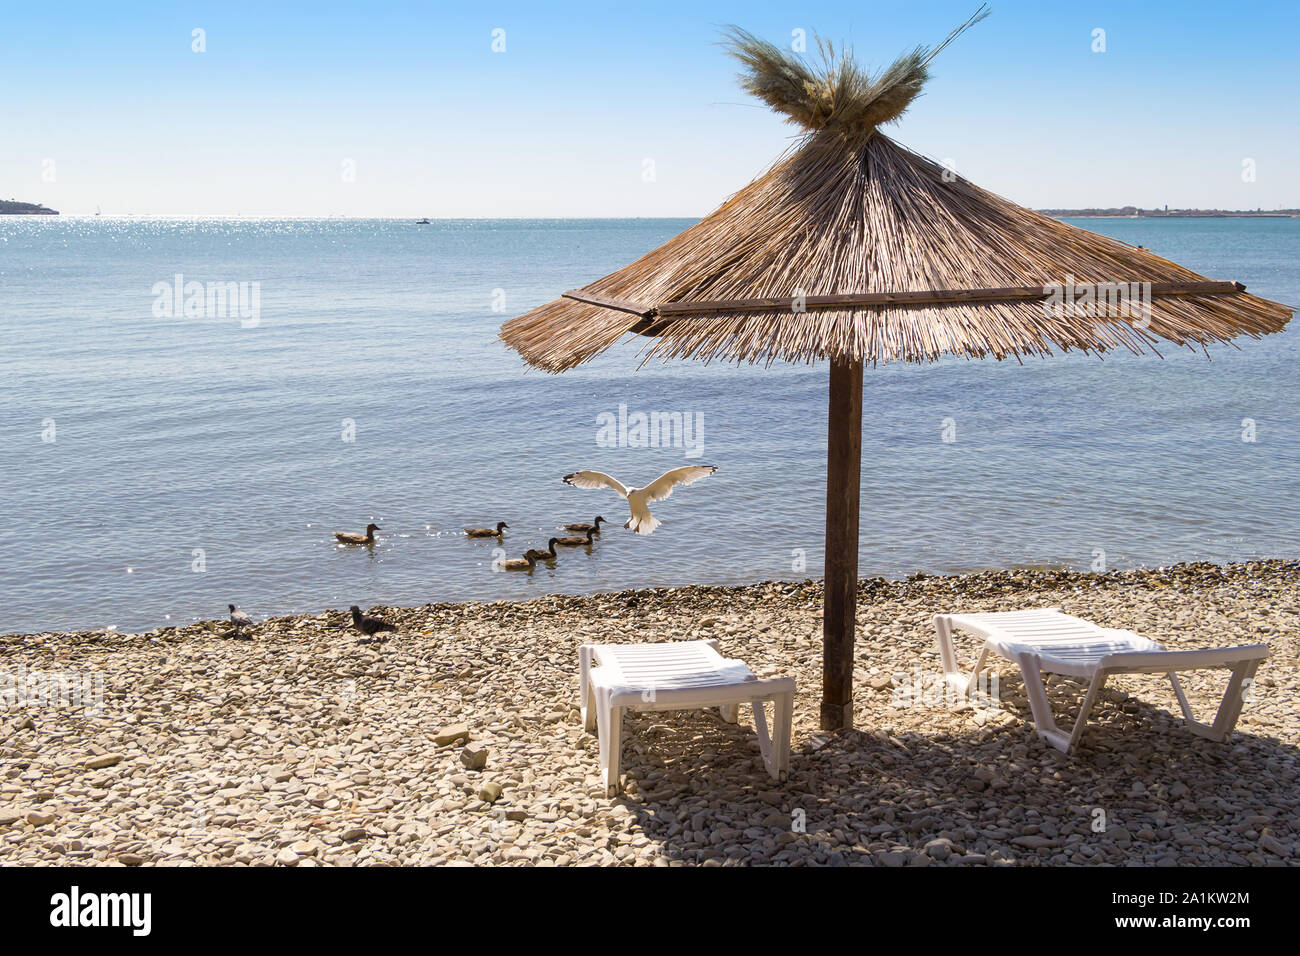 Einen Erholsamen Urlaub Am Meer Zwei Liegestuhle Und Sonnenschirm Am Strand Kieselsteine Unter Ihren Fussen Mowen Tauben Und Enten Im Rahmen Stockfotografie Alamy